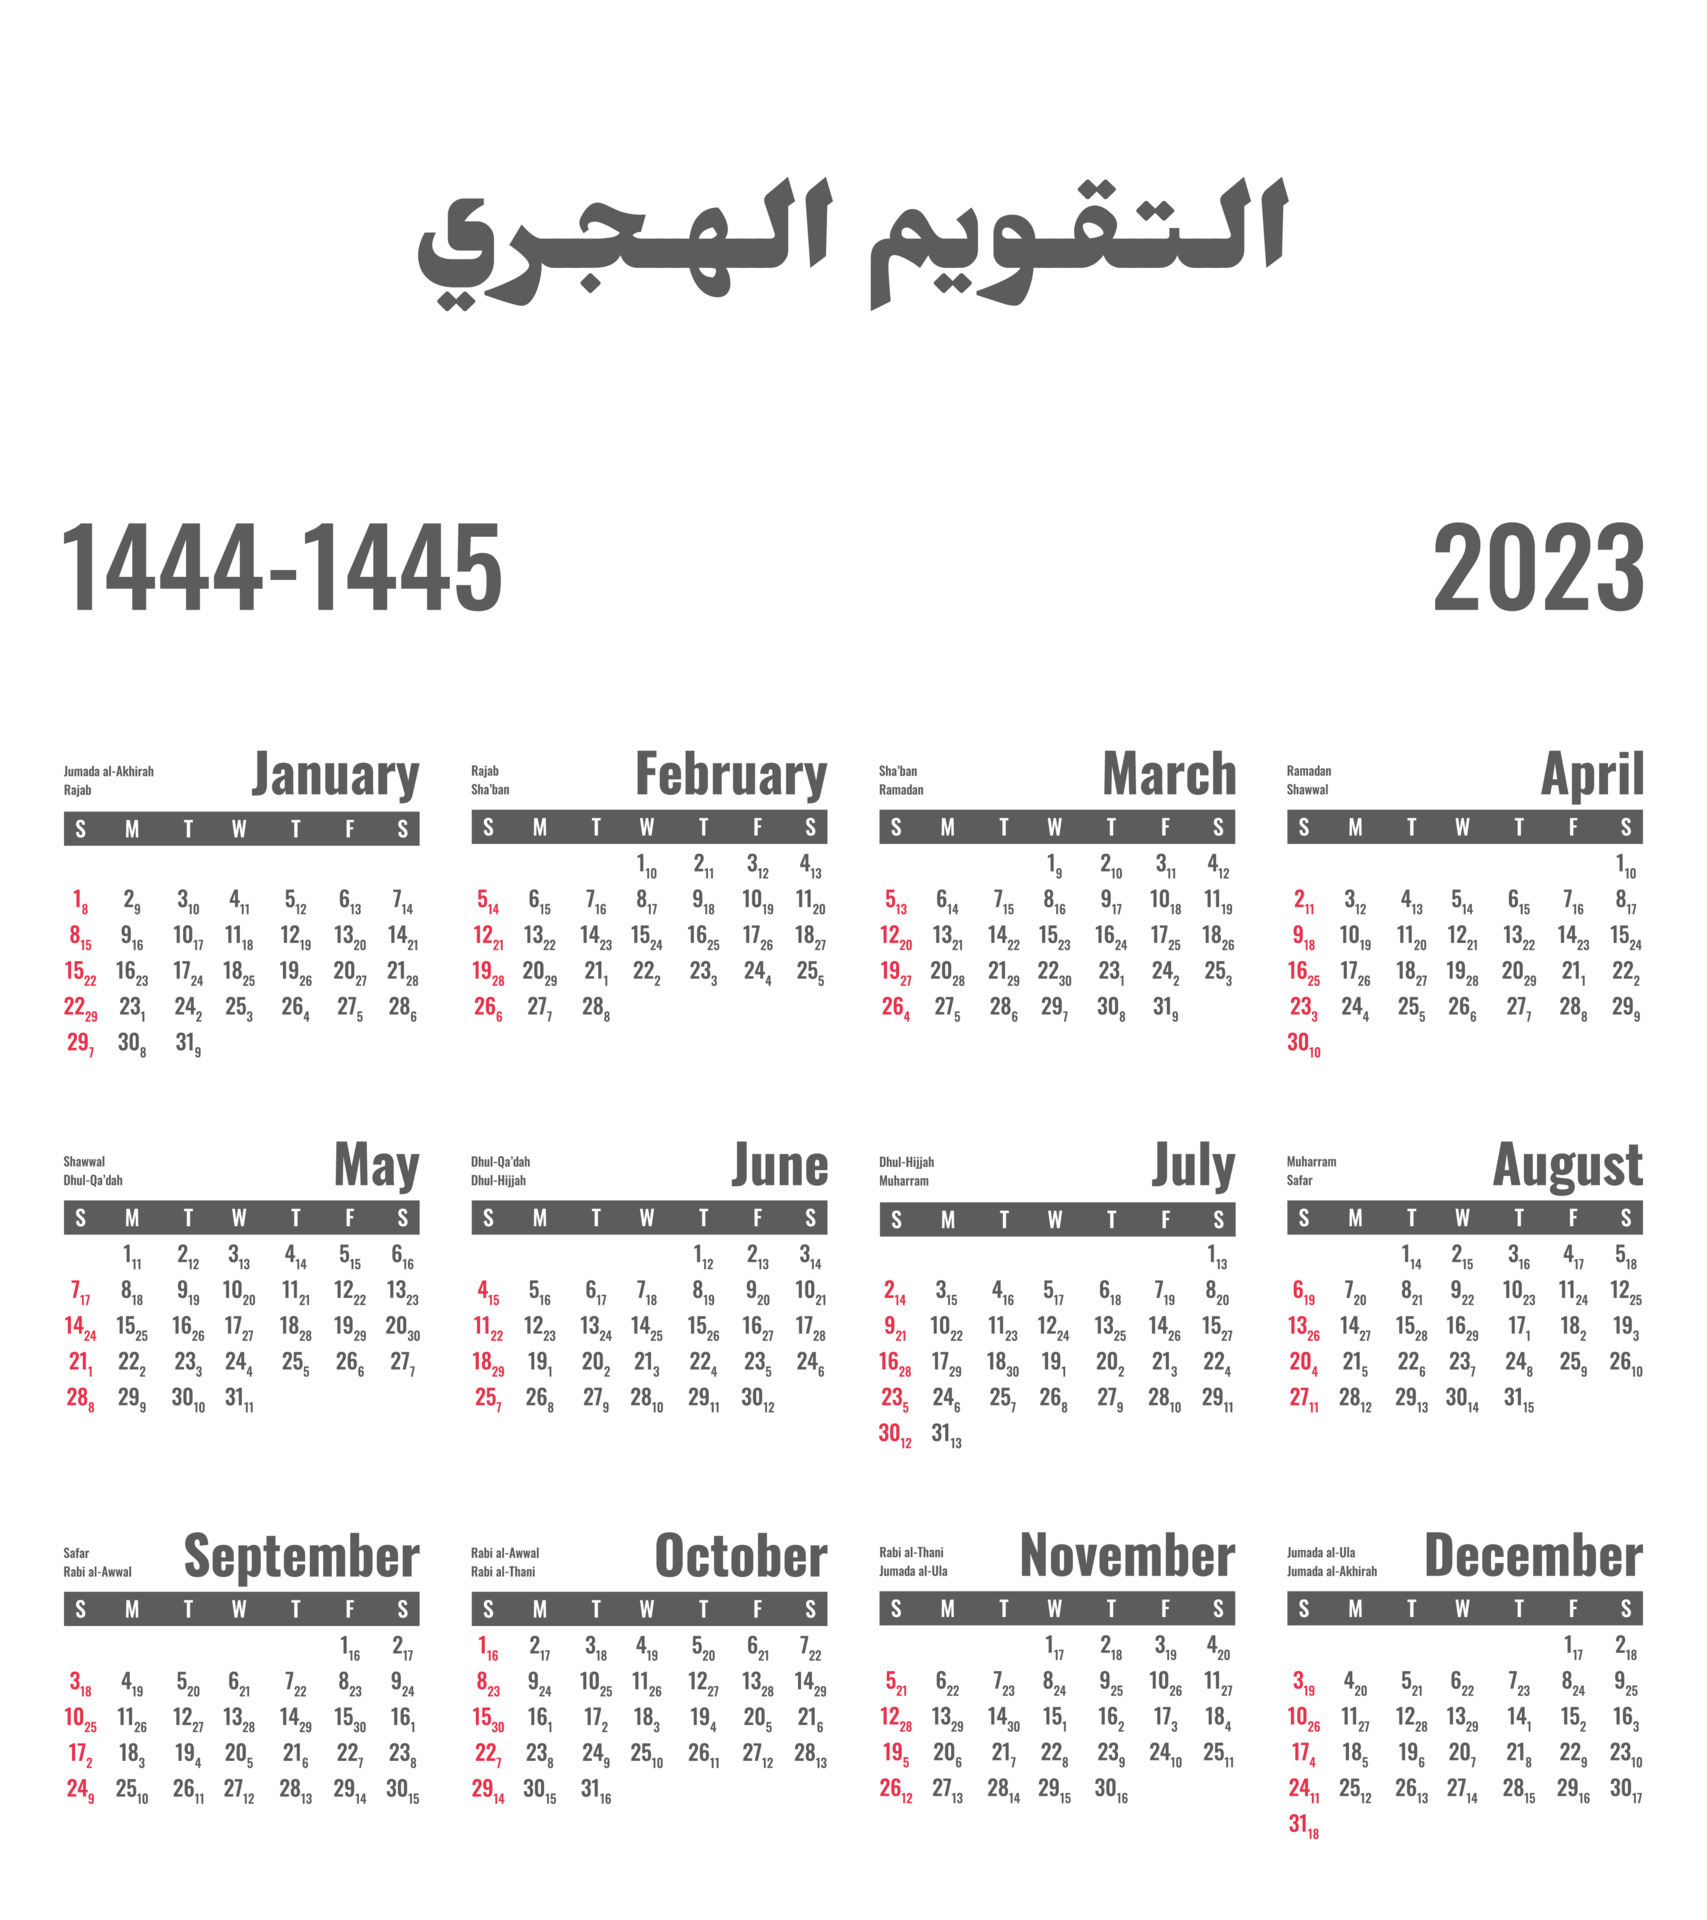 calendrier-2023-calendrier-hijri-pour-l-ann-e-1444-1445-traduction-du